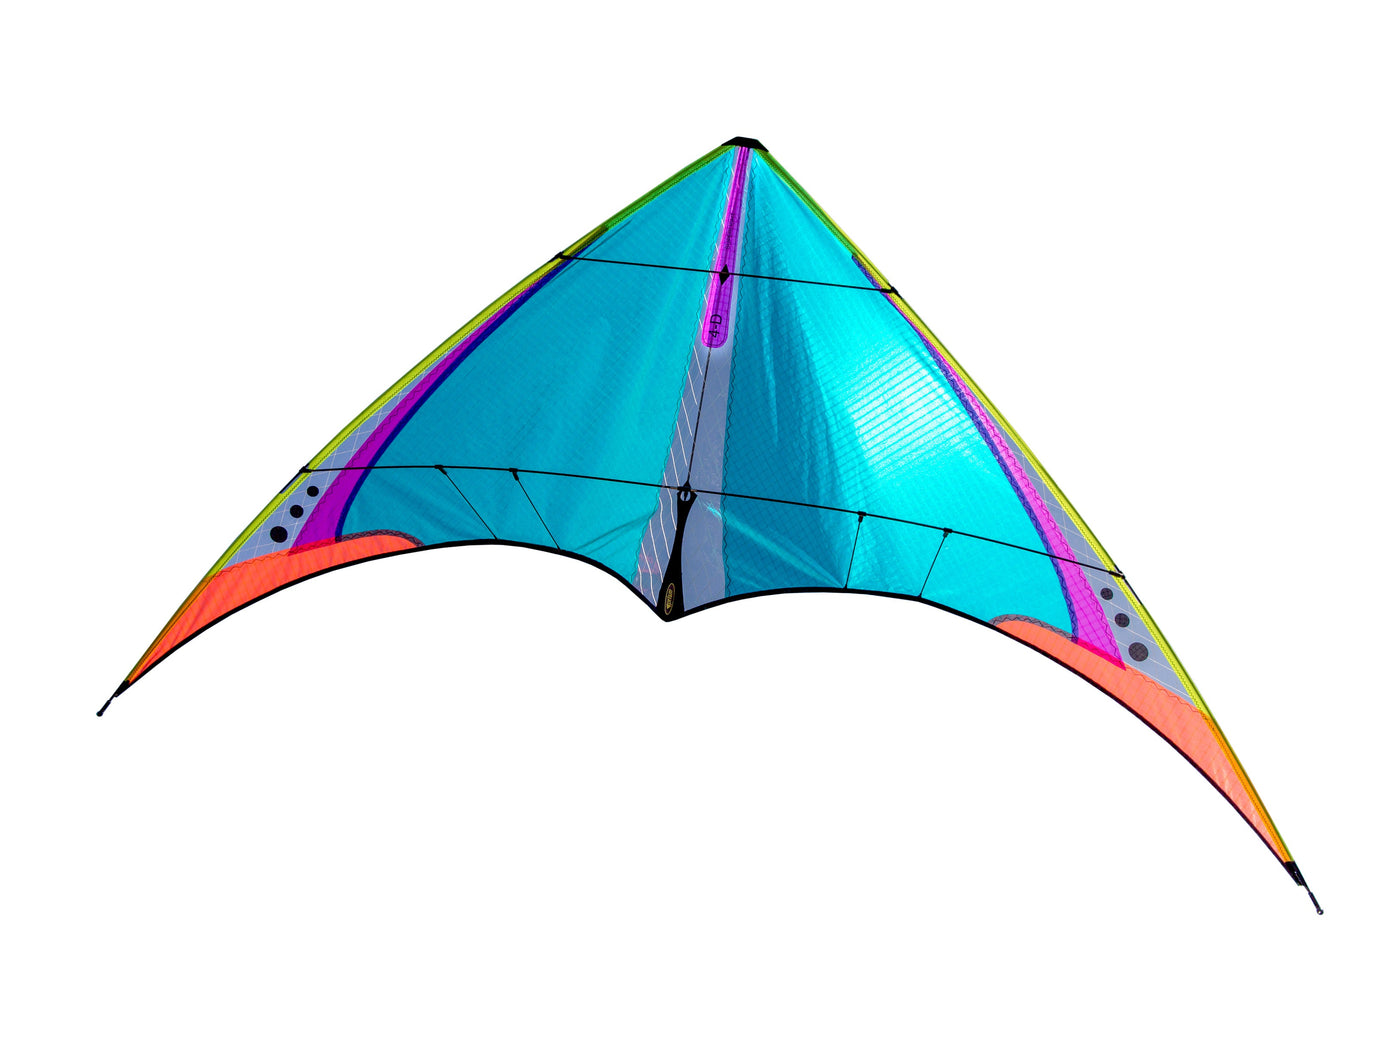 Throwback 4D Superlight stunt kite on white background